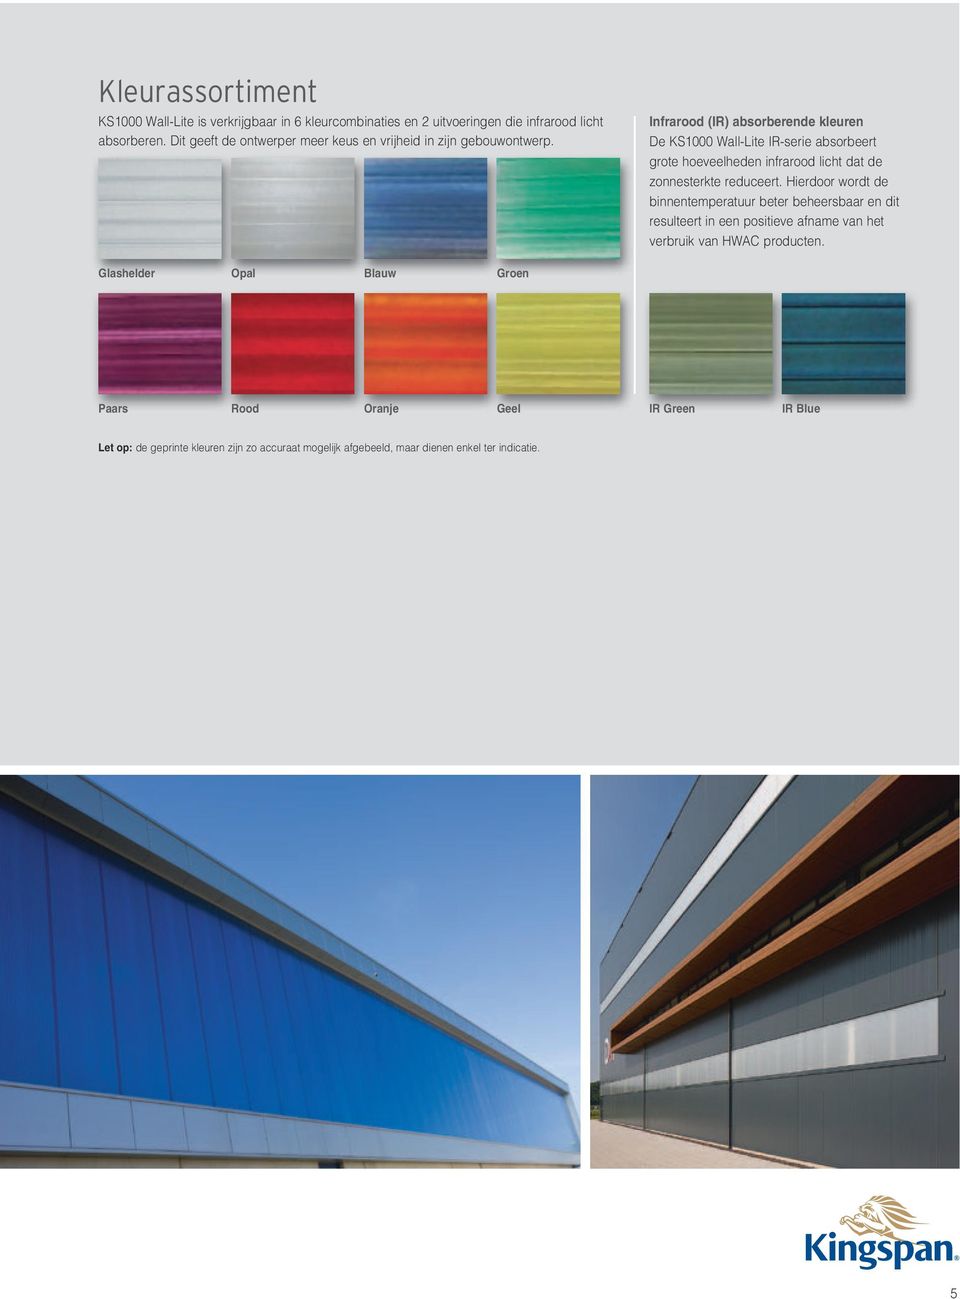 Infrarood (IR) absorberende kleuren De KS1000 Wall-Lite IR-serie absorbeert grote hoeveelheden infrarood licht dat de zonnesterkte reduceert.